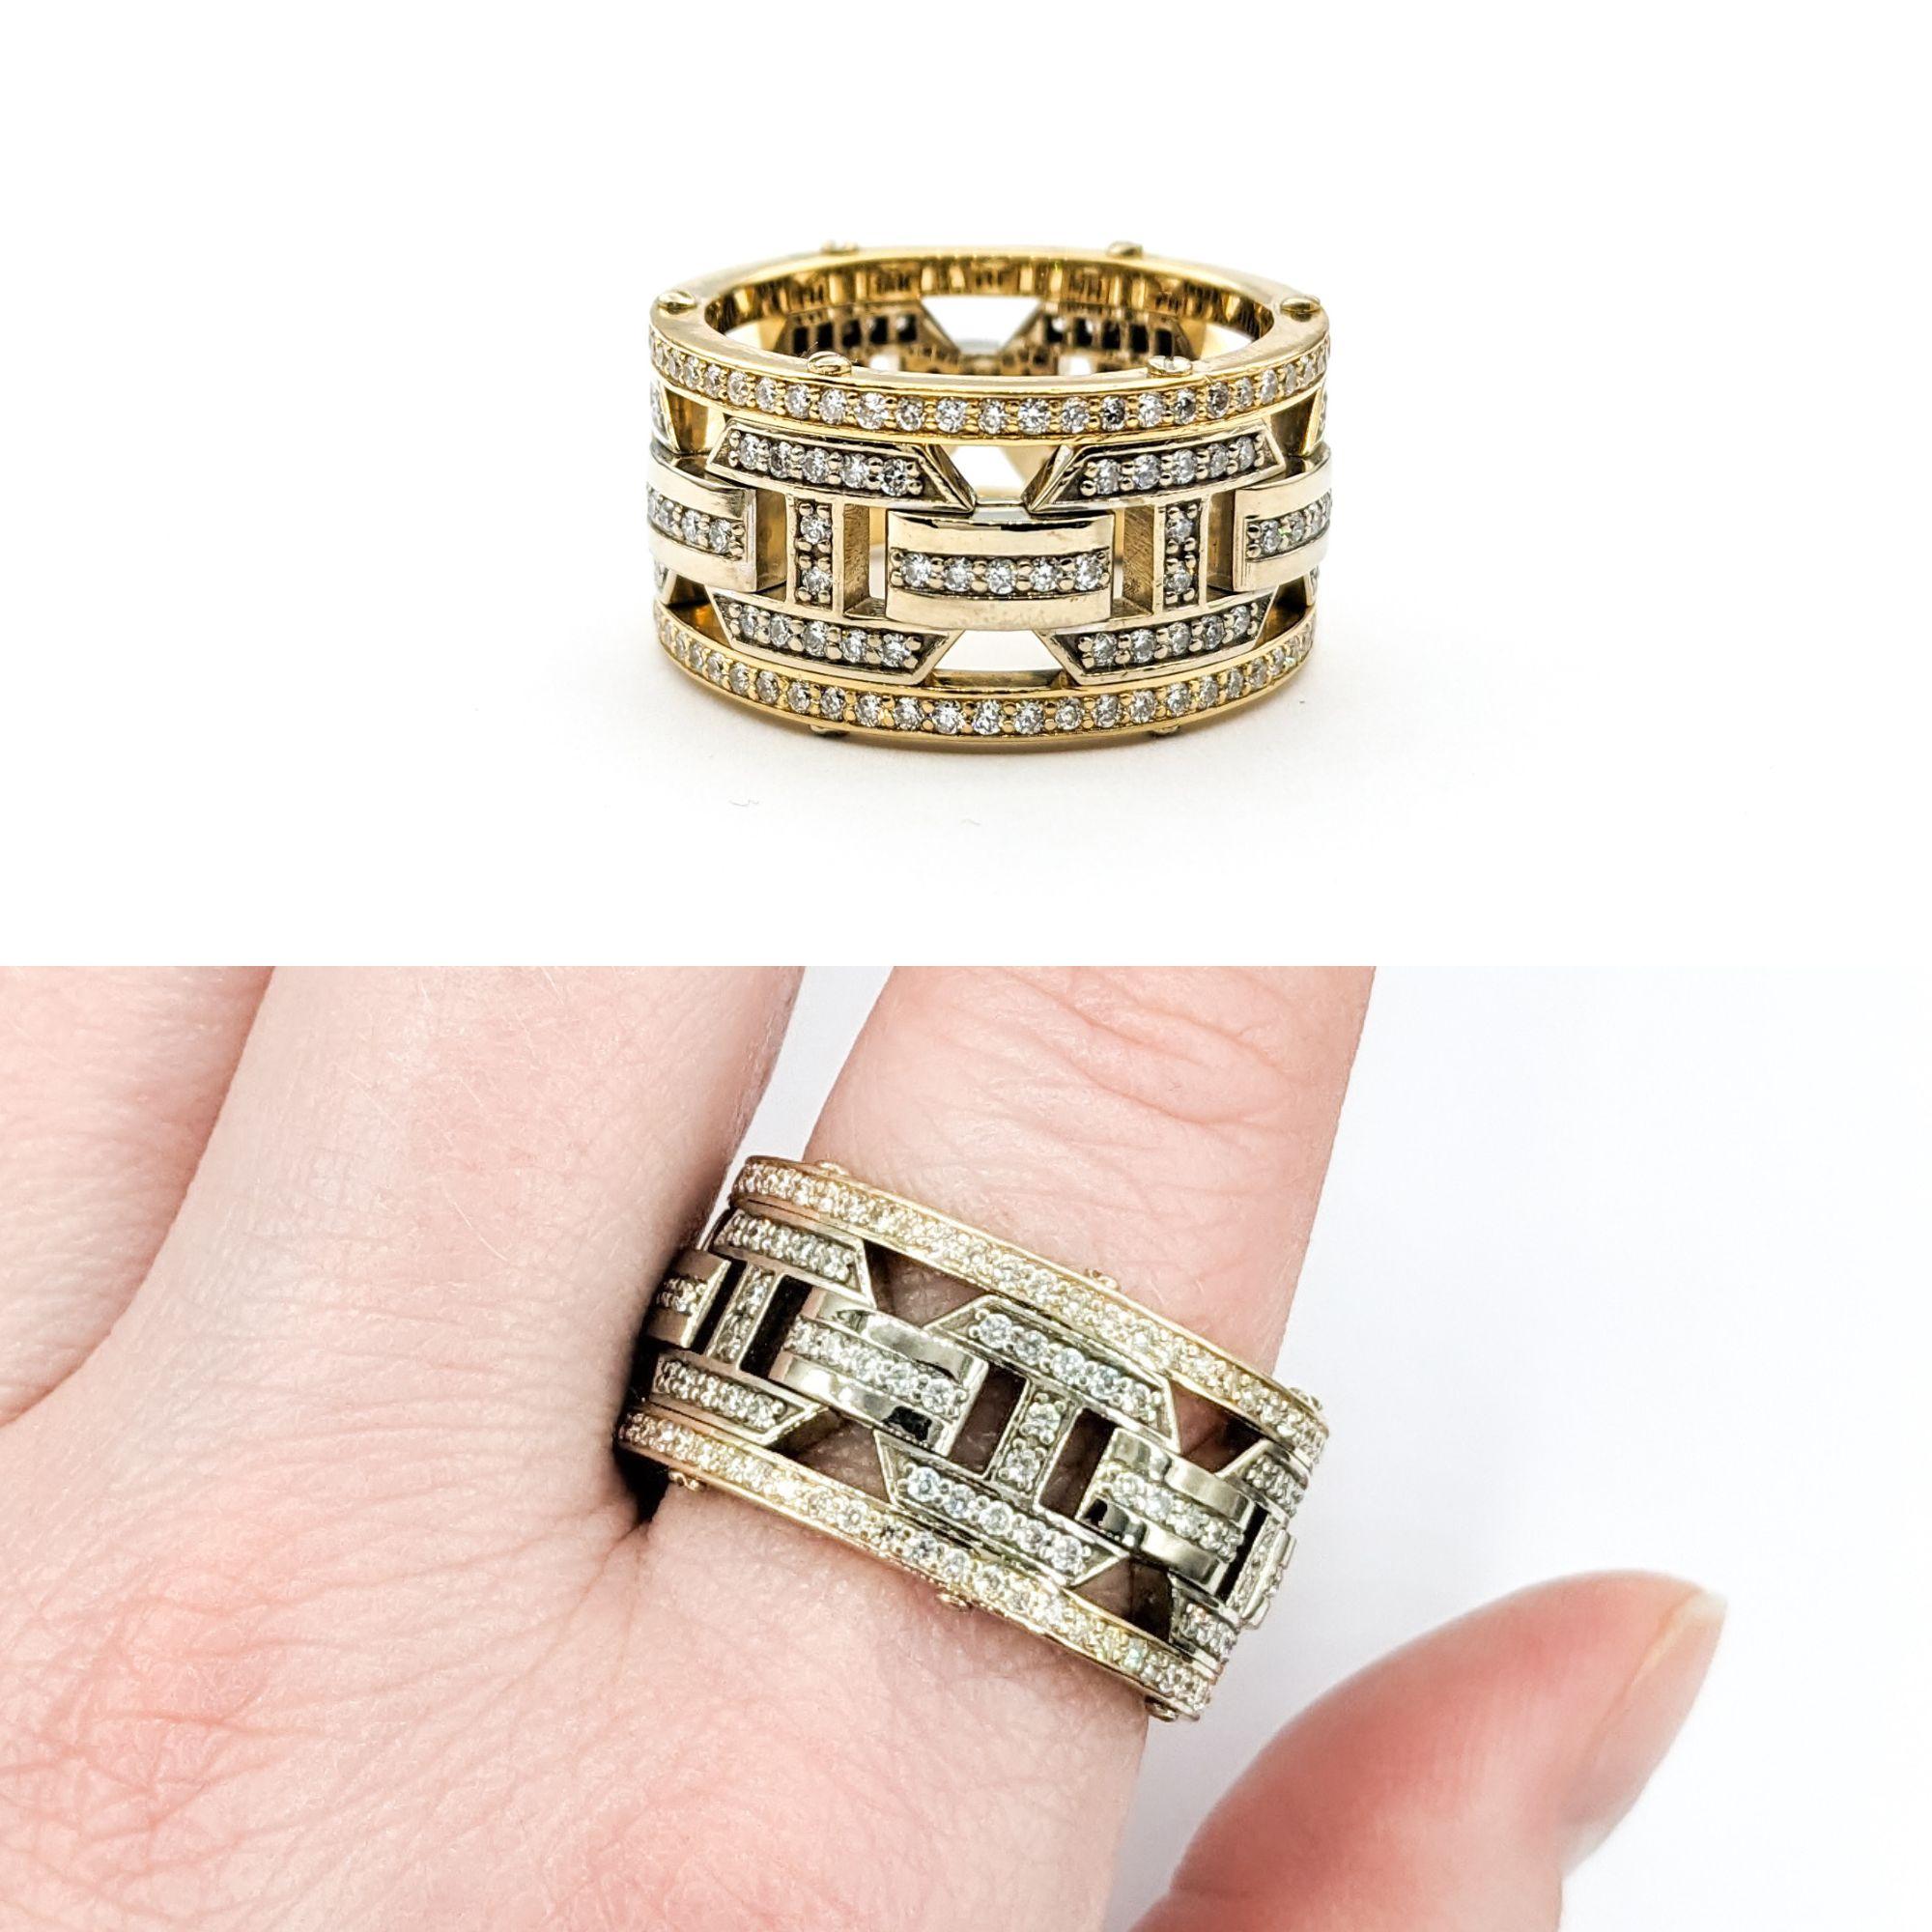 Rockford Ring mit 2,10 Karat Diamant aus zweifarbigem Gold

Dieser prächtige Diamantring aus der Rockford Collection'S ist aus zweifarbigem 14-karätigem Gold gefertigt. Er rühmt sich einer atemberaubenden Reihe von Diamanten mit einem Gesamtgewicht